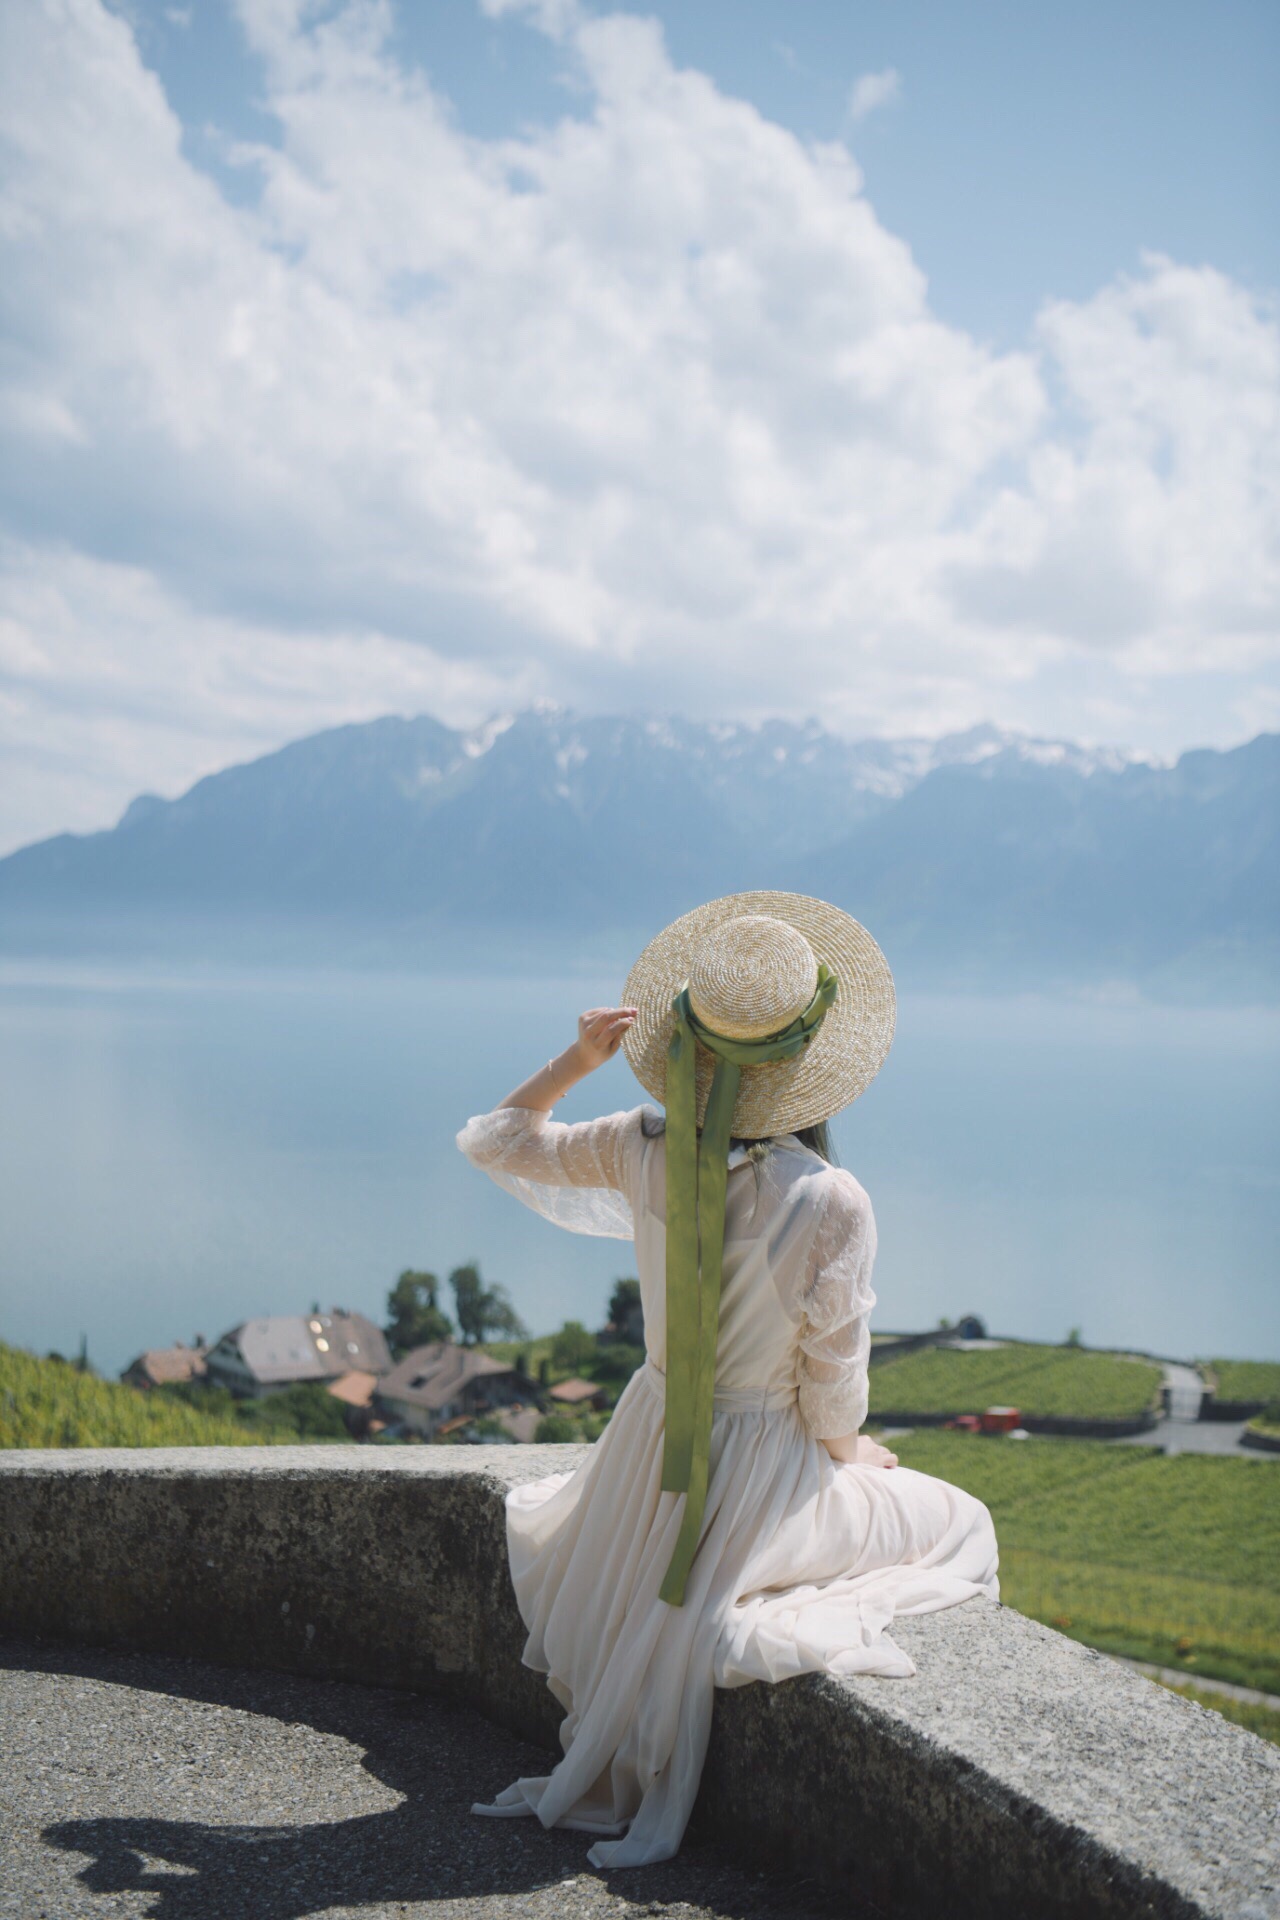 瑞士🇨🇭旅行|不可错过的湖畔葡萄园 瑞士之旅最大的惊喜以及不得不提的就是沃韦 / Vevey了！ 💚